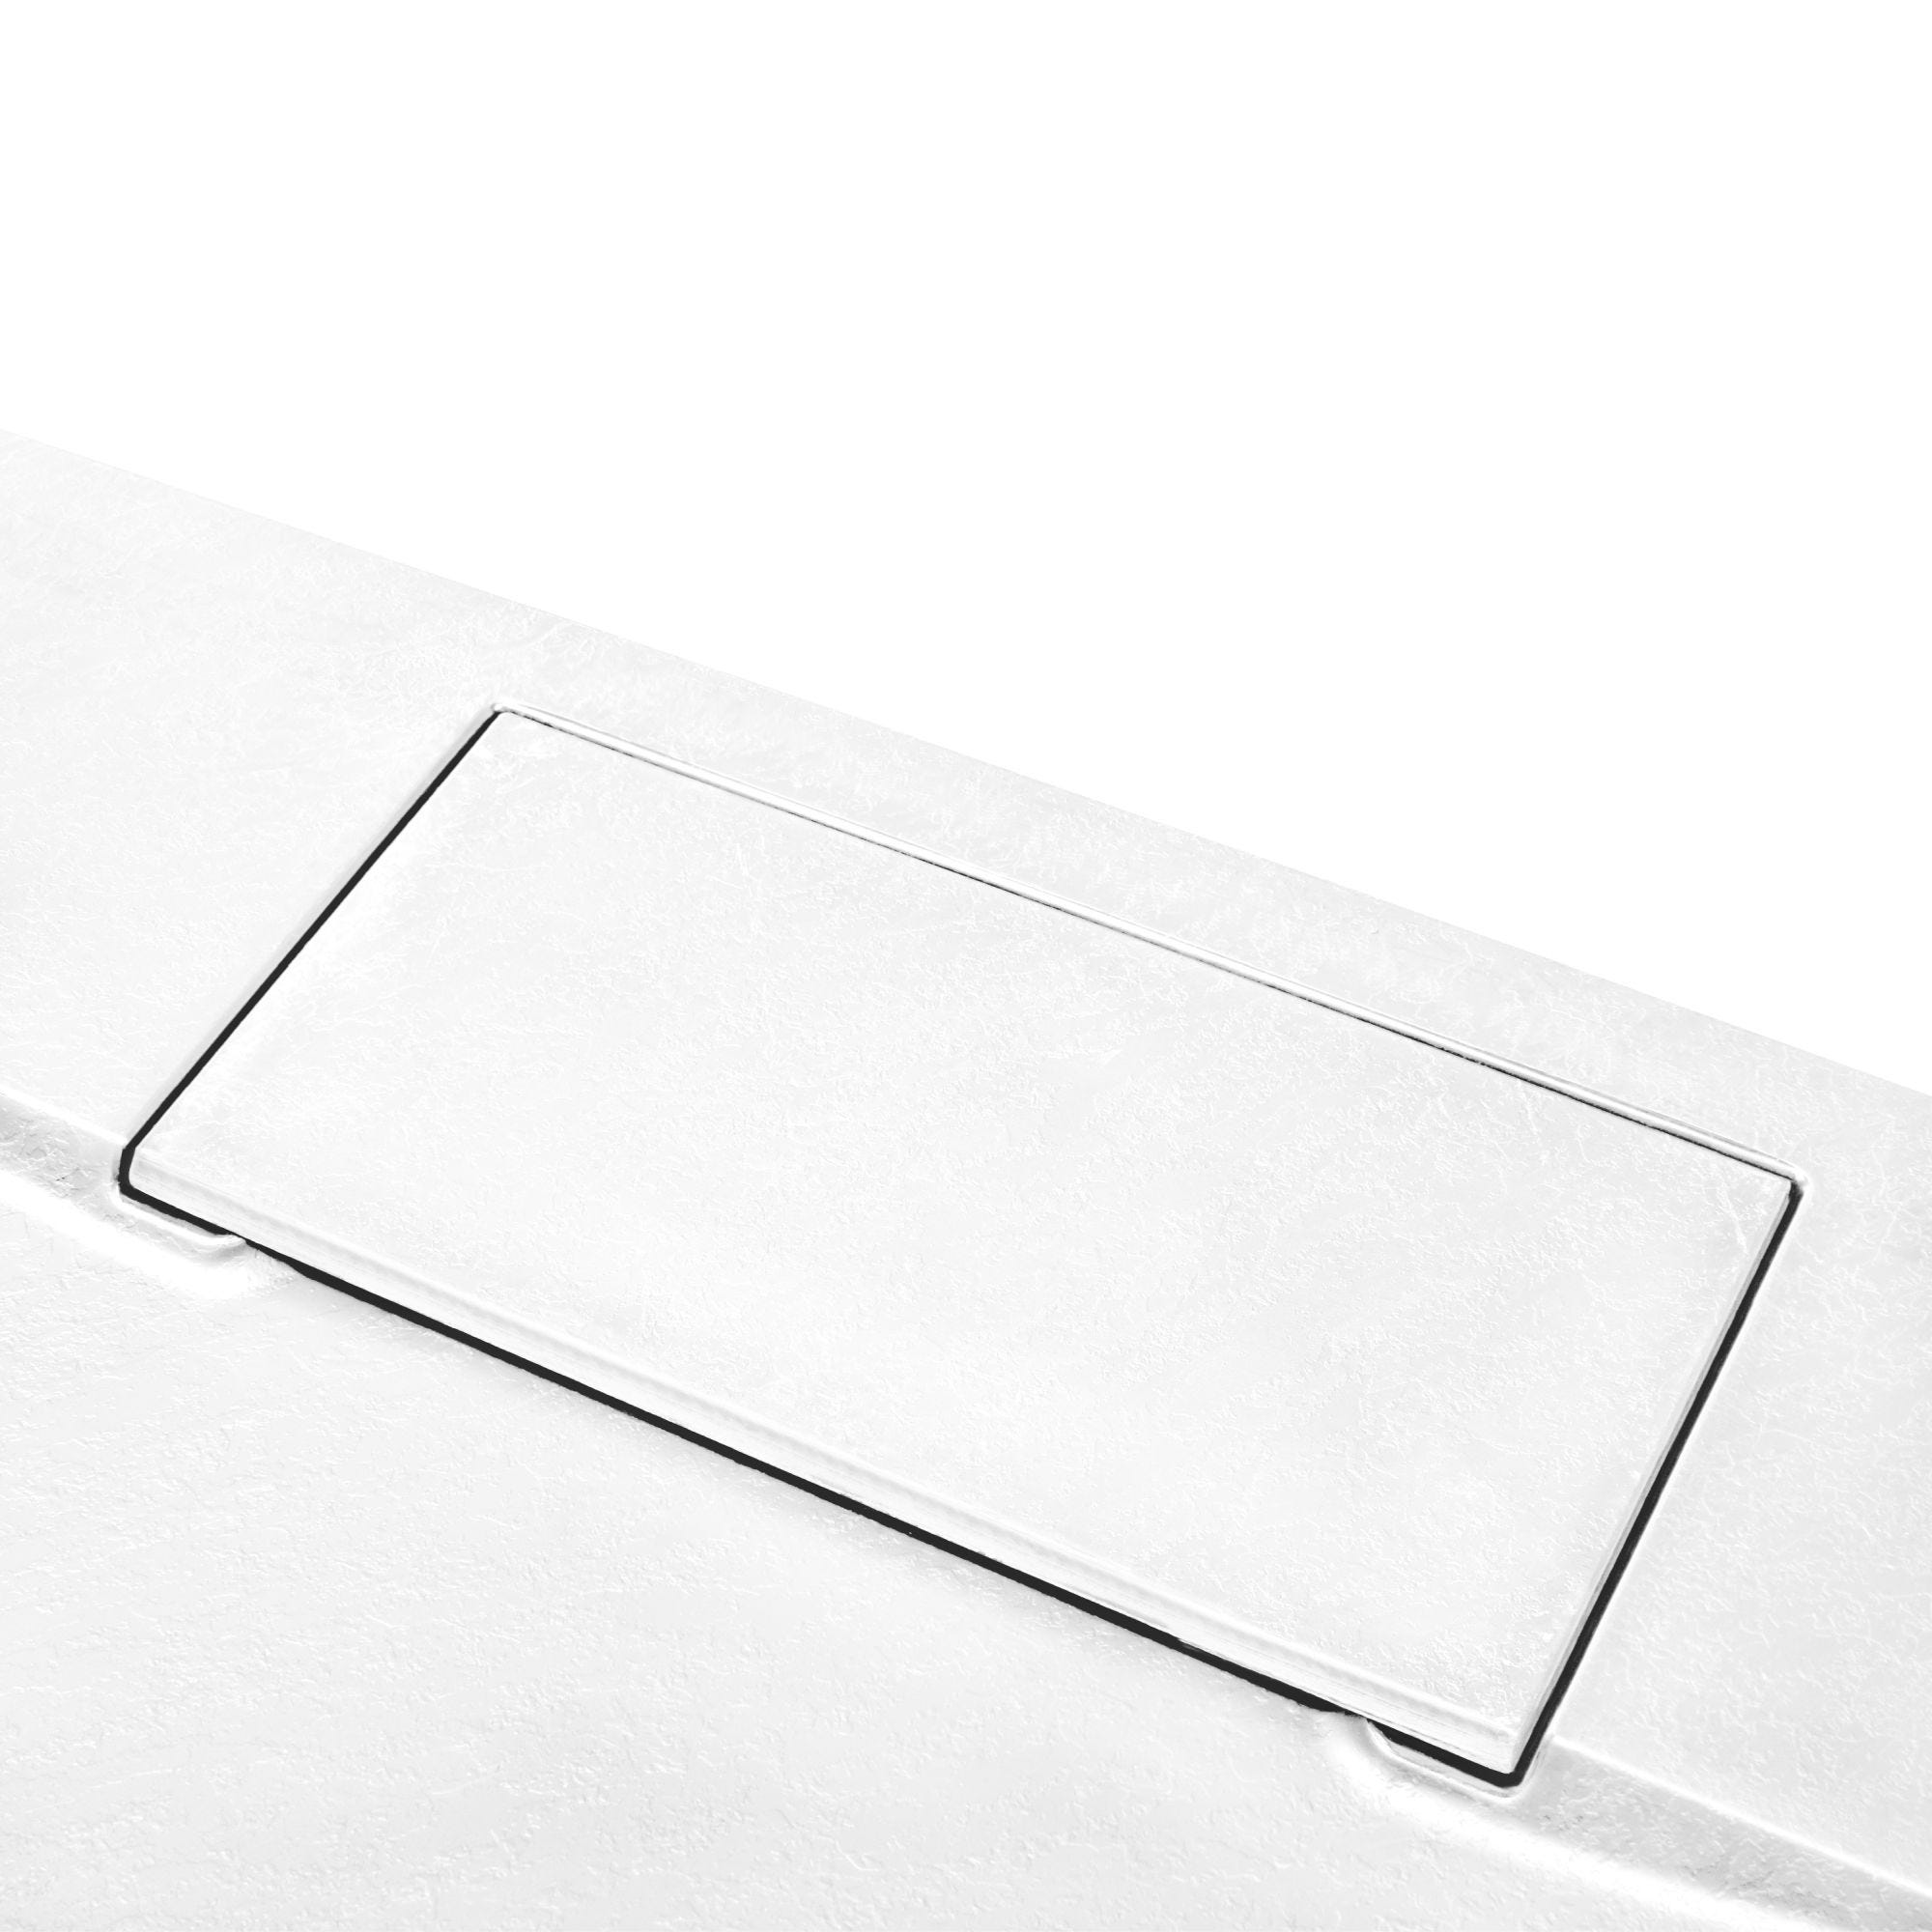 Schulte receveur de douche 80 x 80 x 3,2 cm, blanc effet pierre ultra légers, rectangulaire, extra plat à poser ou à encastrer, bac à douche 4